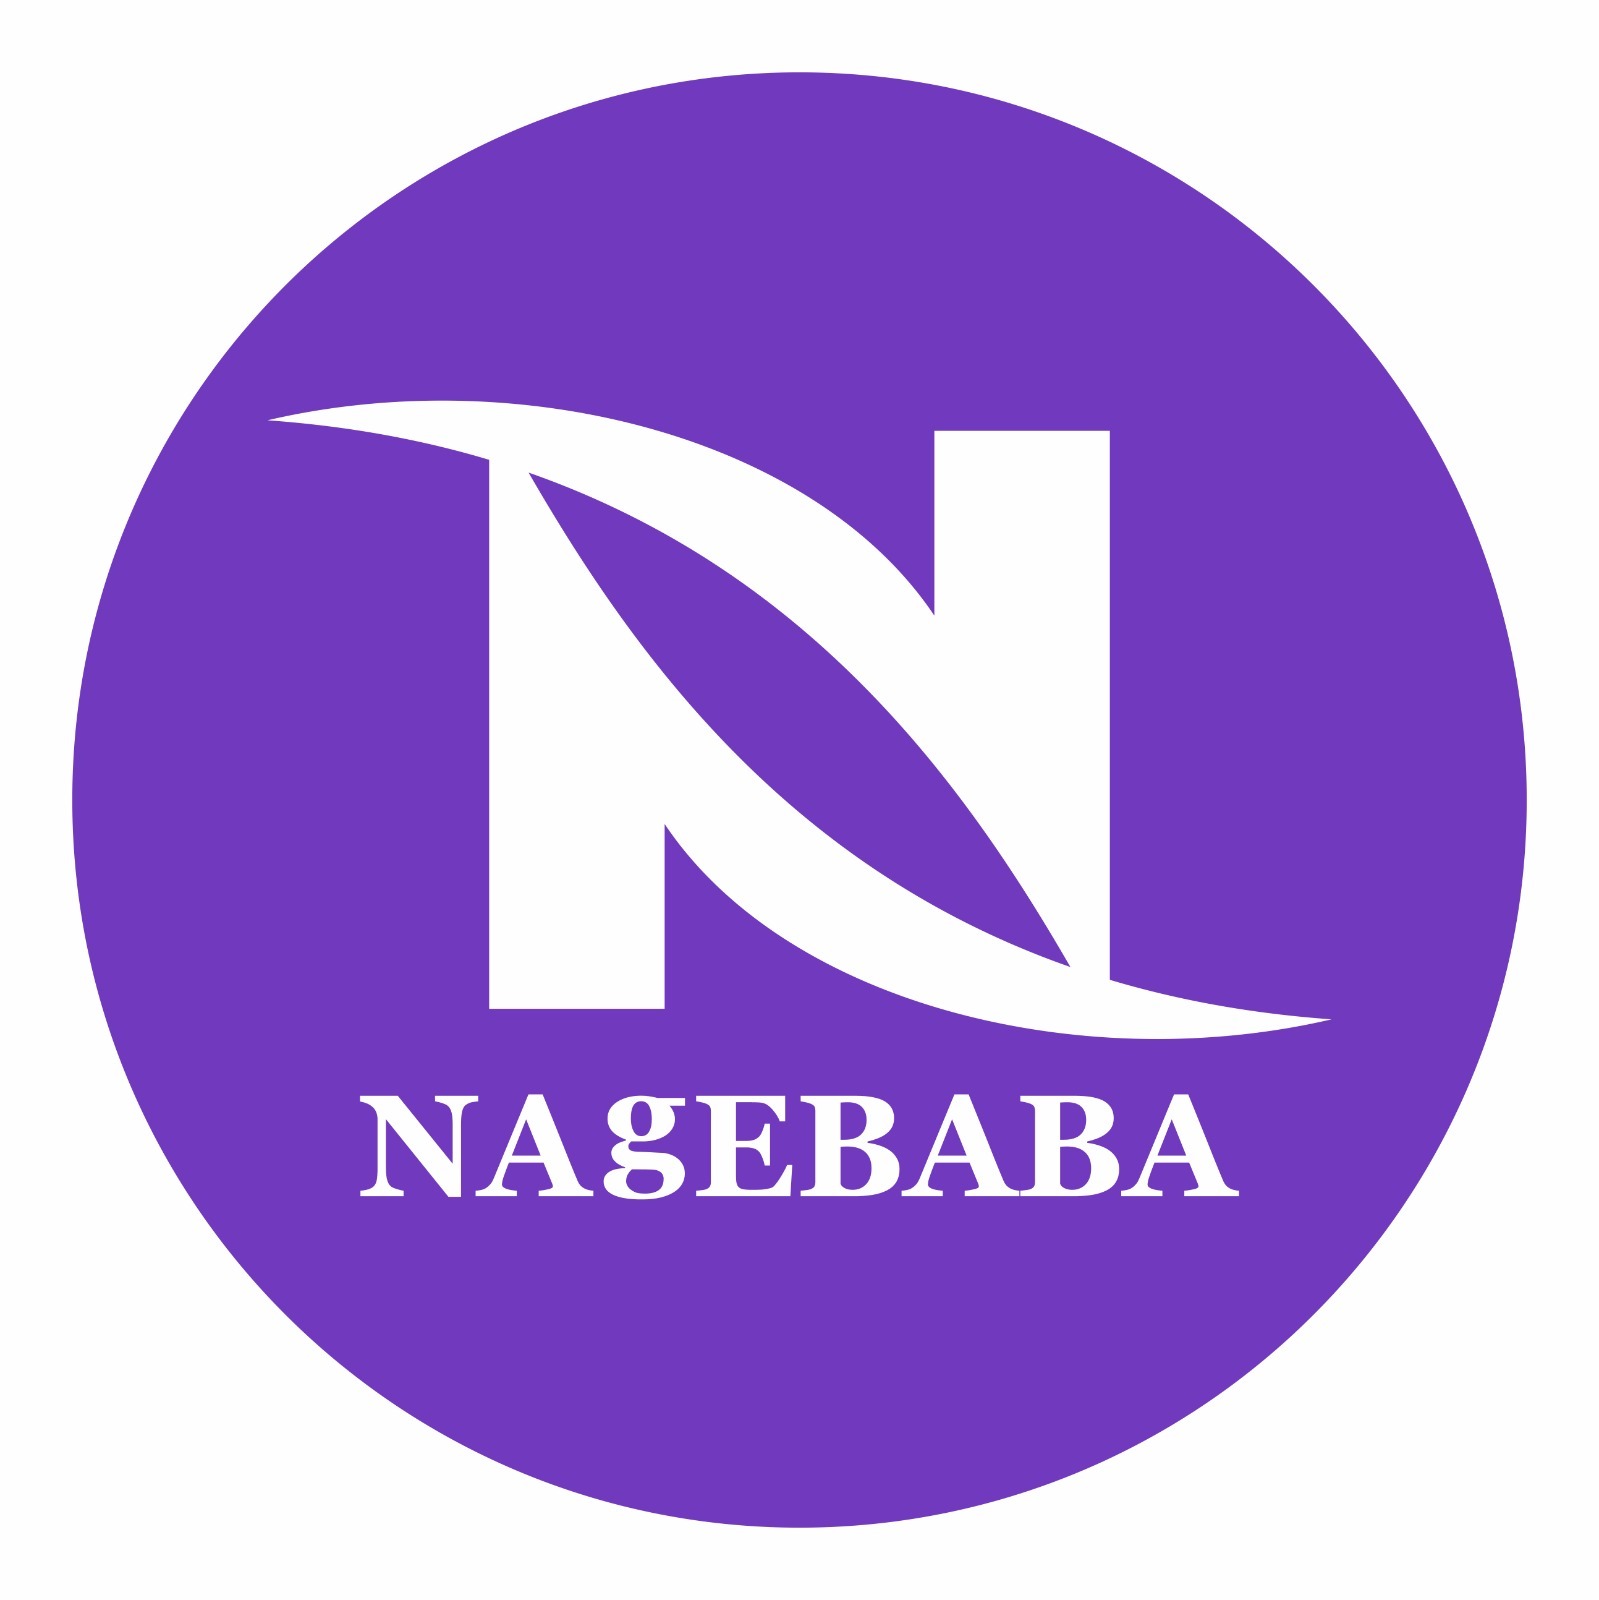 Nagebaba About Image